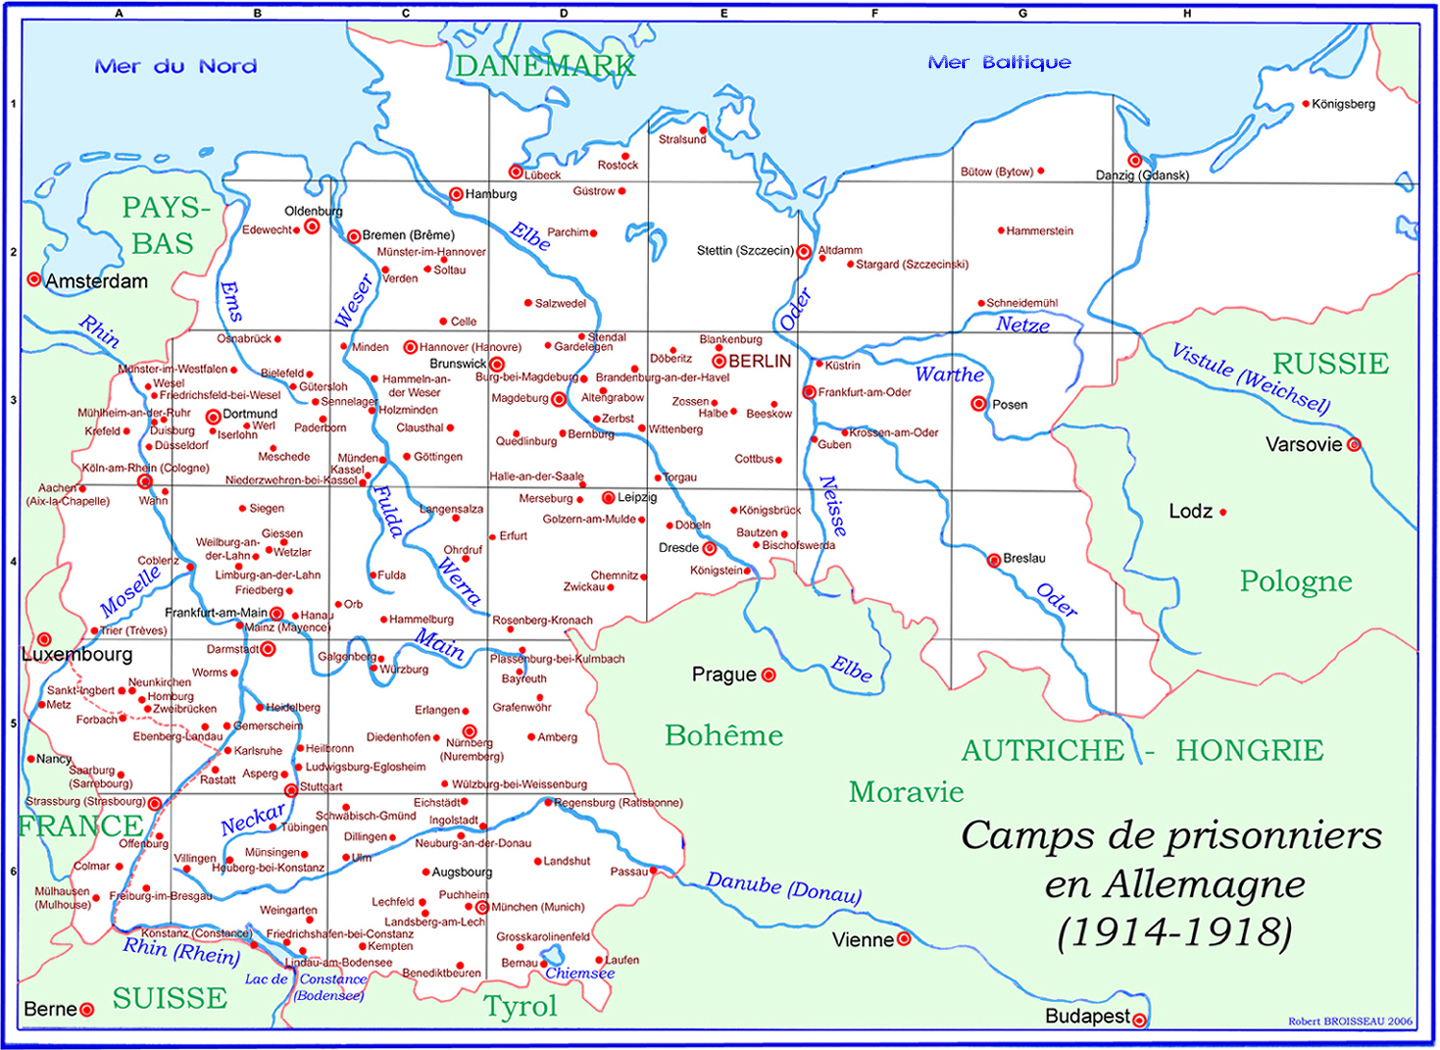 Carte des camps de prisonniers en Allemagne pendant la Première Guerre Mondiale